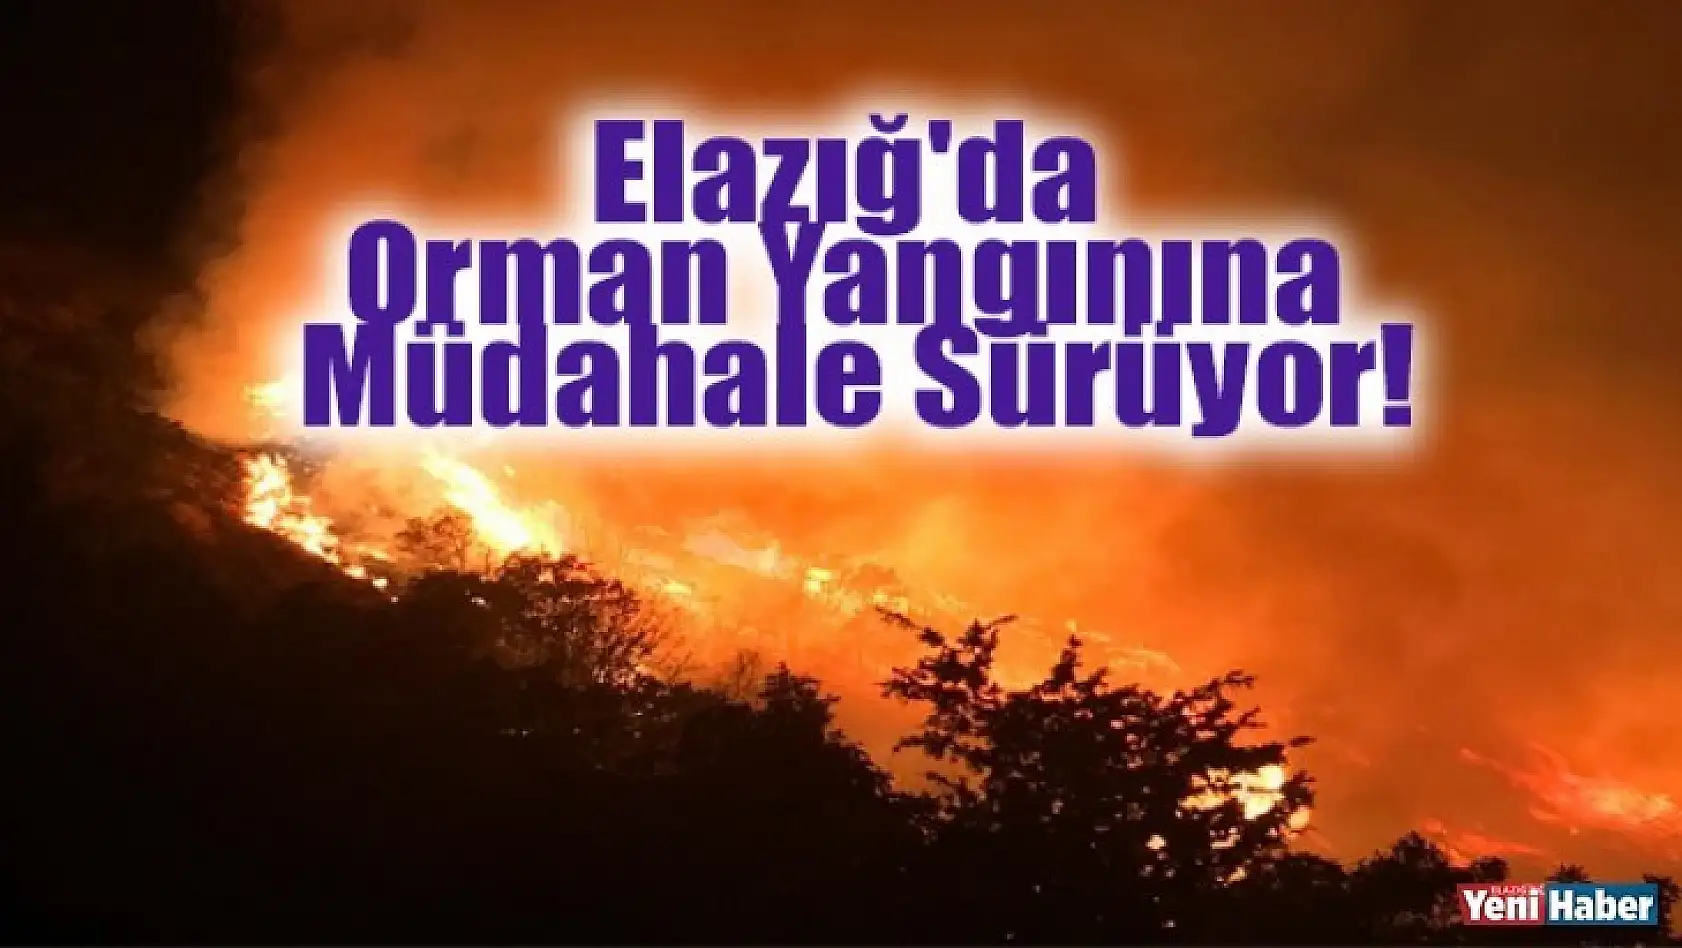 Elazığ'da Orman Yangınına Müdahale Sürüyor!